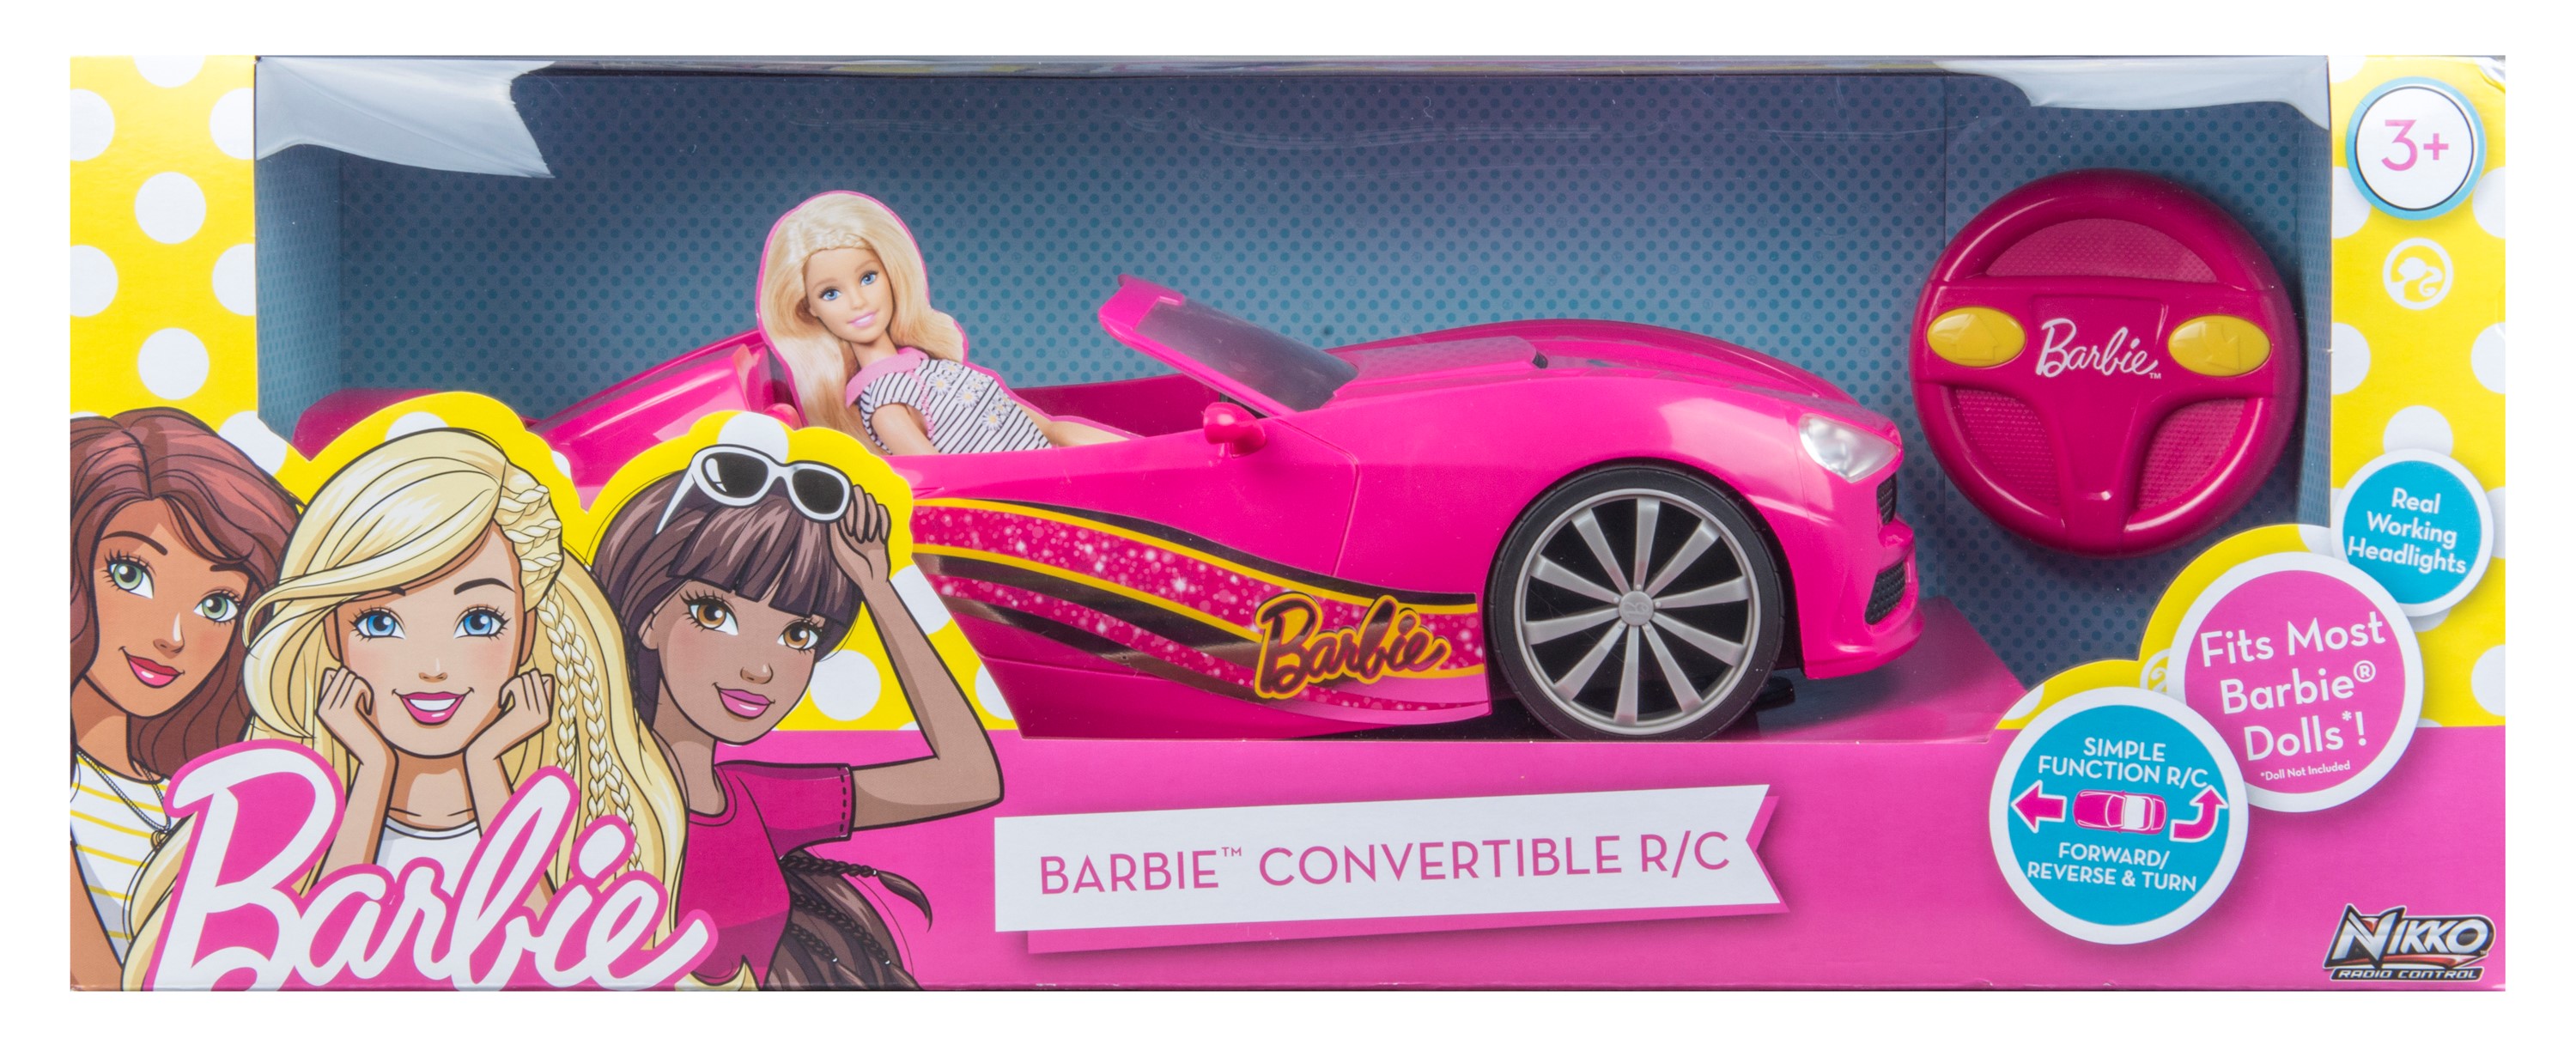 remote control barbie doll car